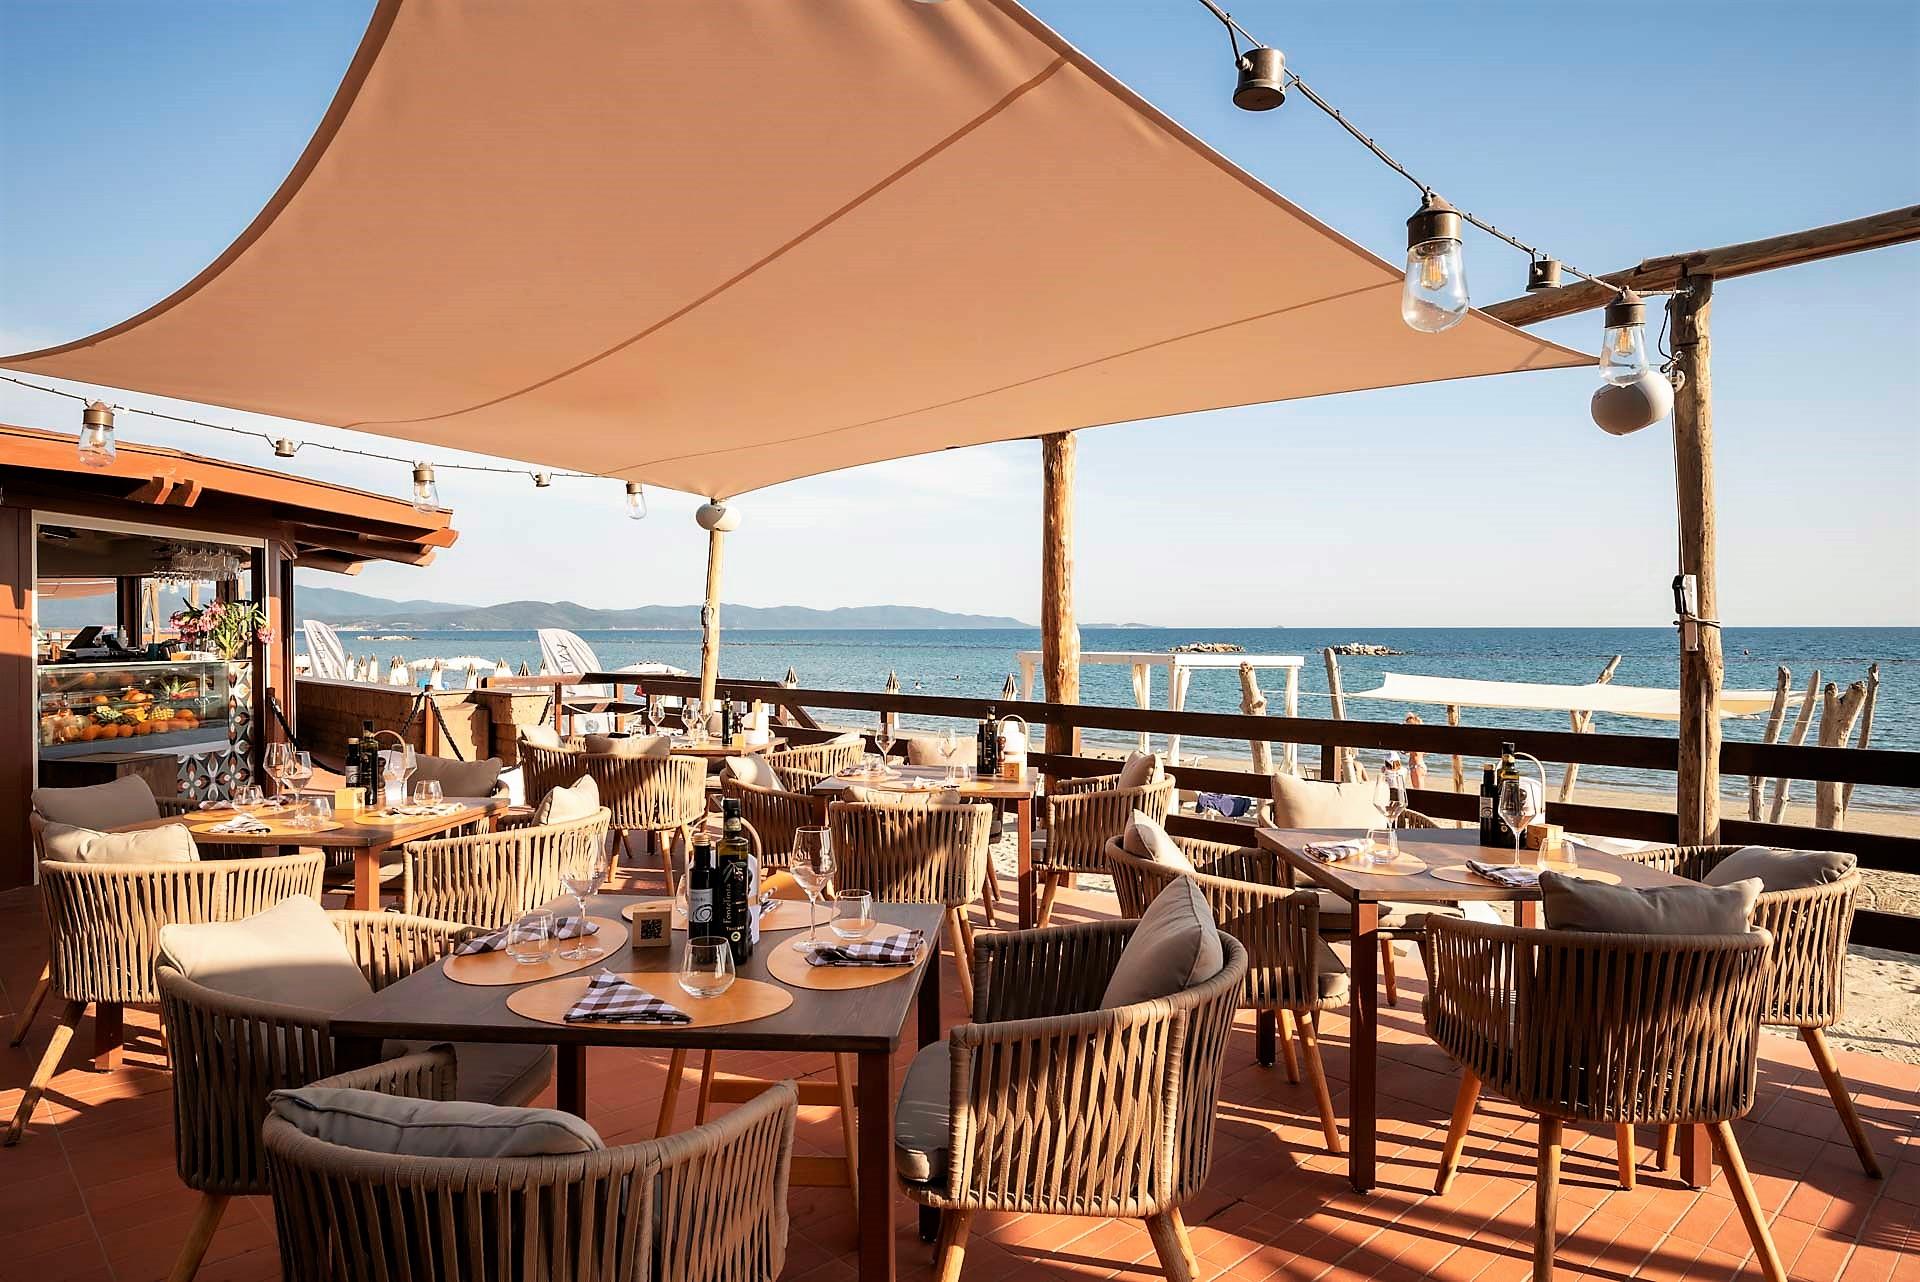 Frühstück mit Meersicht - das Strandrestaurant La Duna im Reka-Ferienresort Golfo del Sole